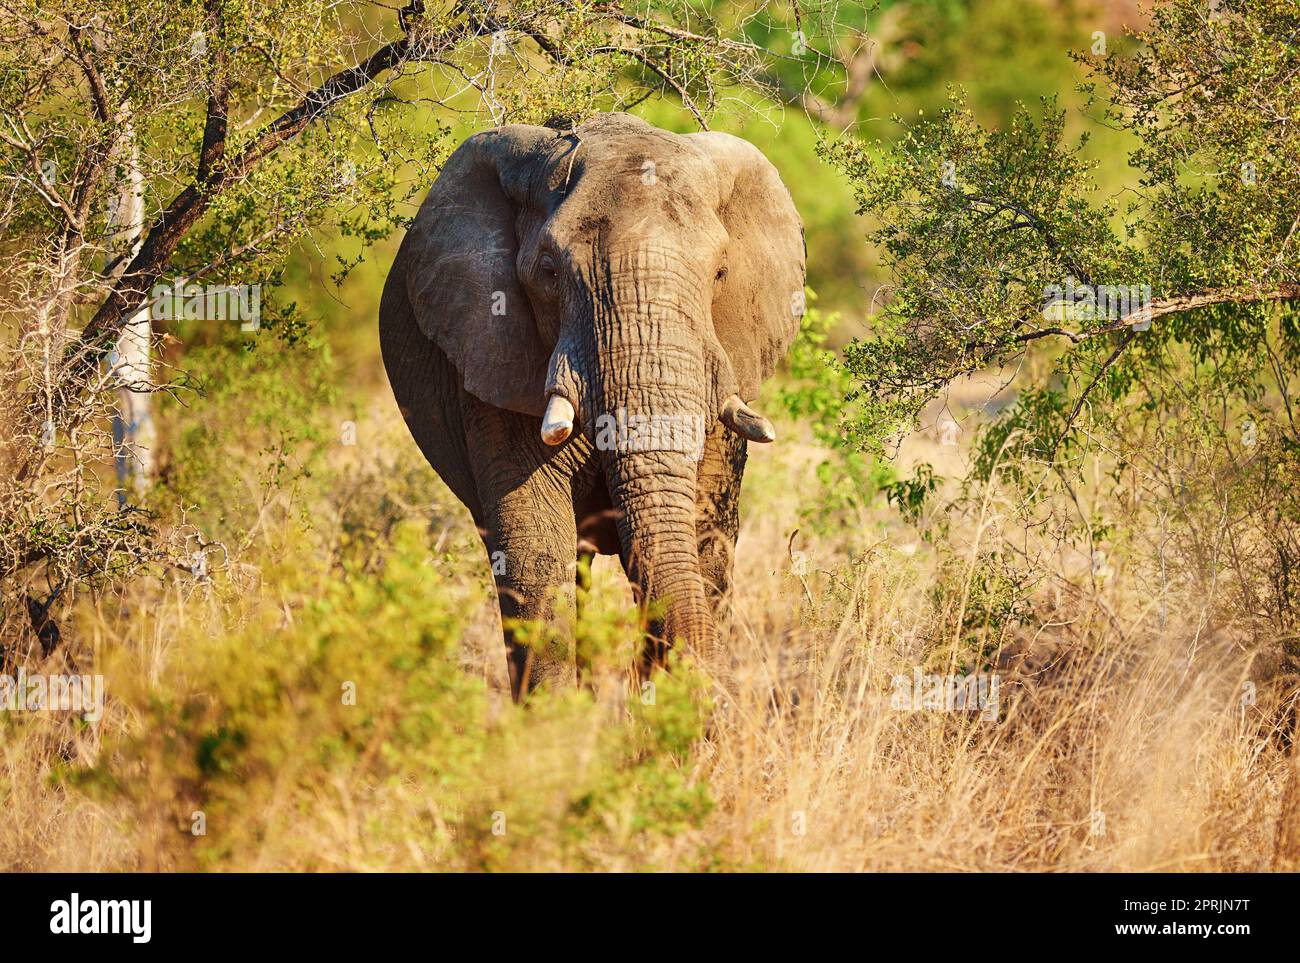 HES un gigante gentile. Foto a tutta lunghezza di un elefante nel suo habitat naturale. Foto Stock